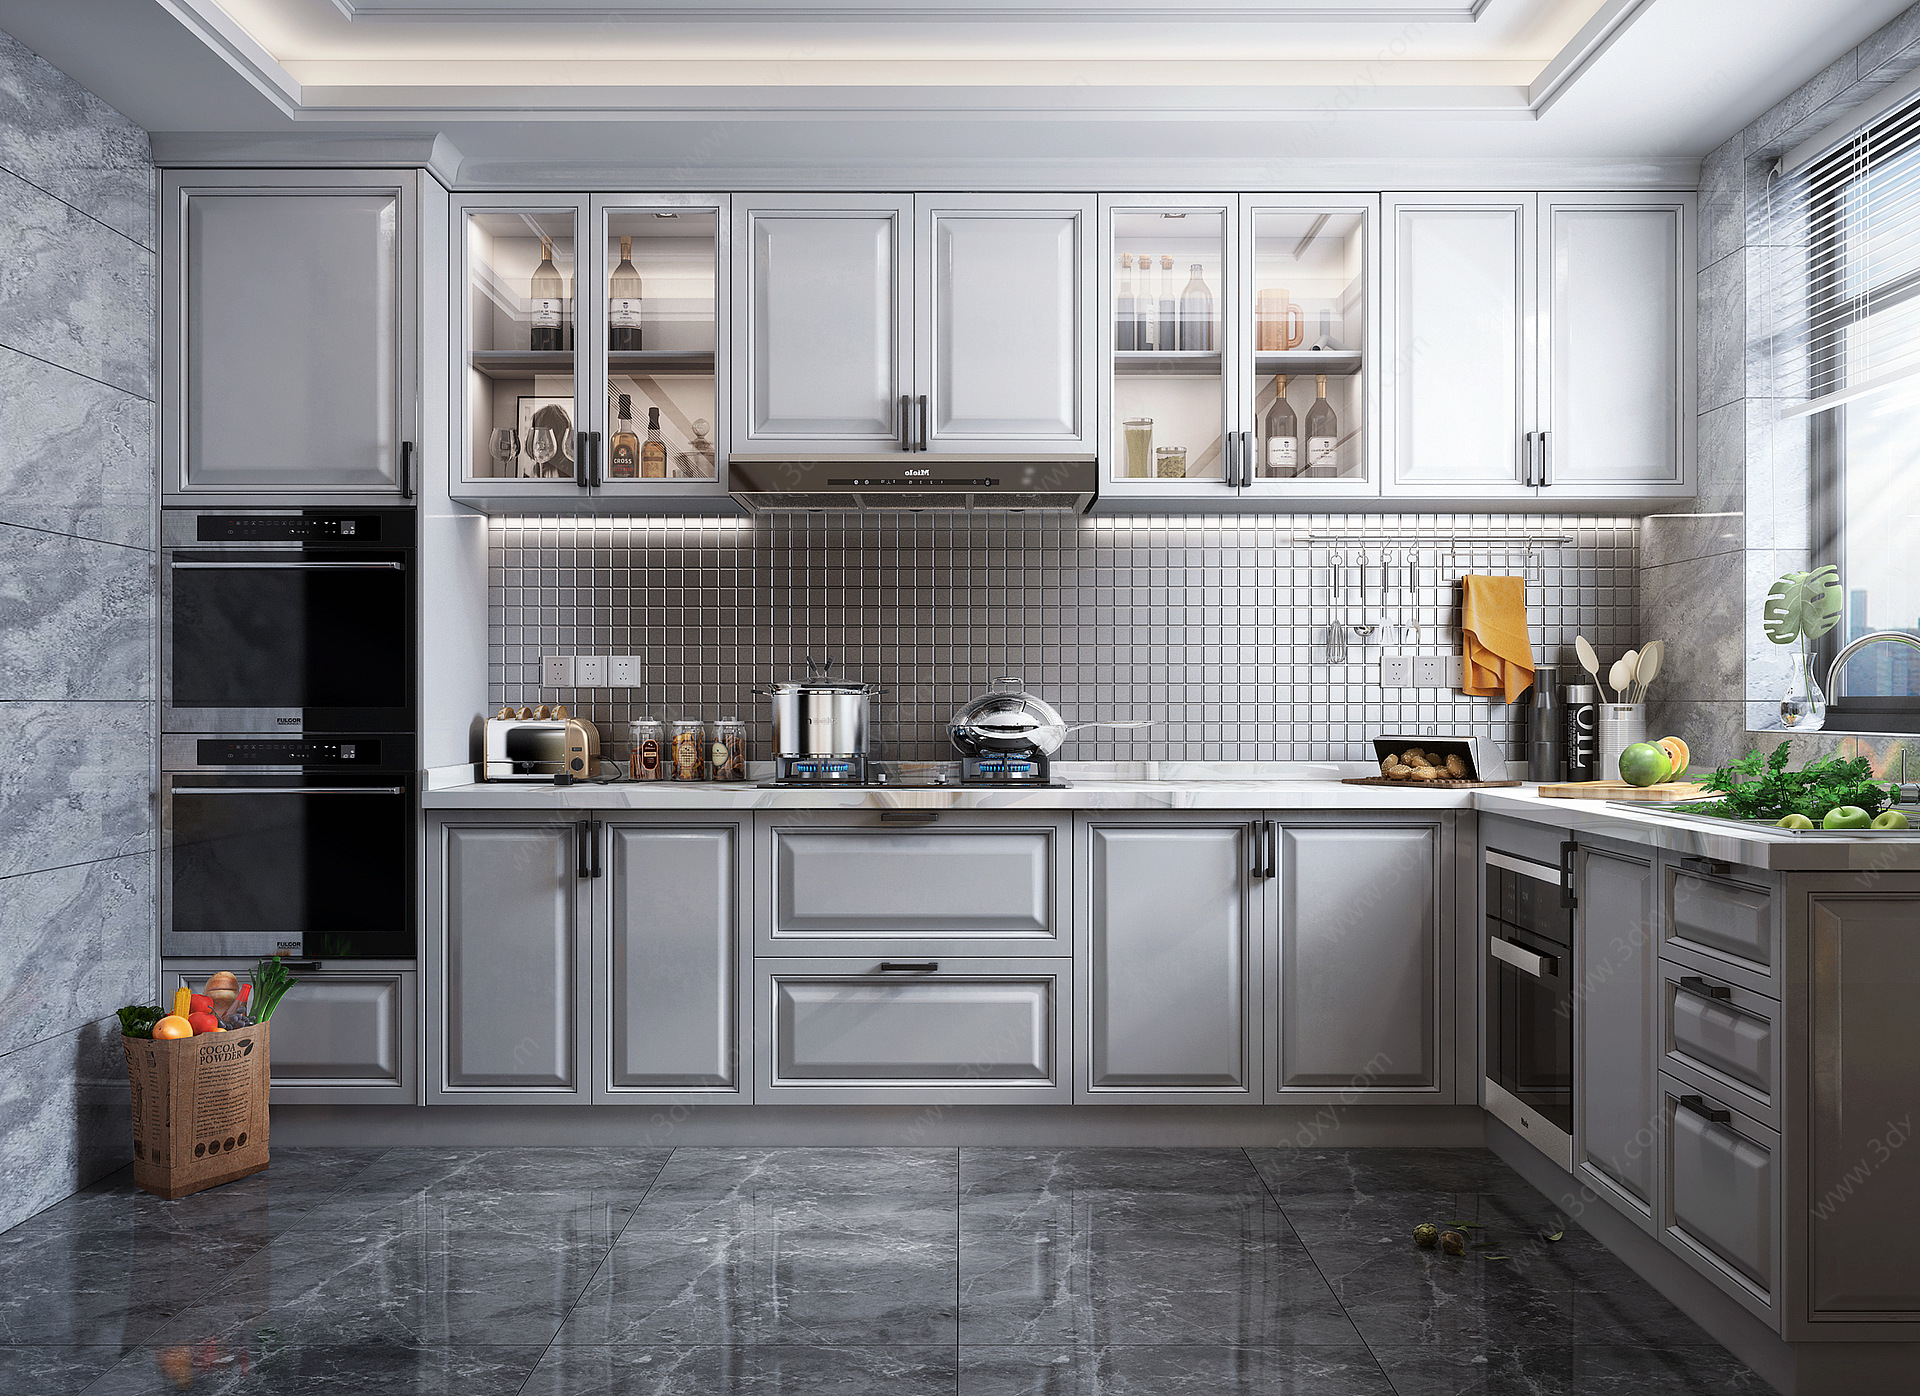 简欧风格厨房橱柜厨房电器3D模型